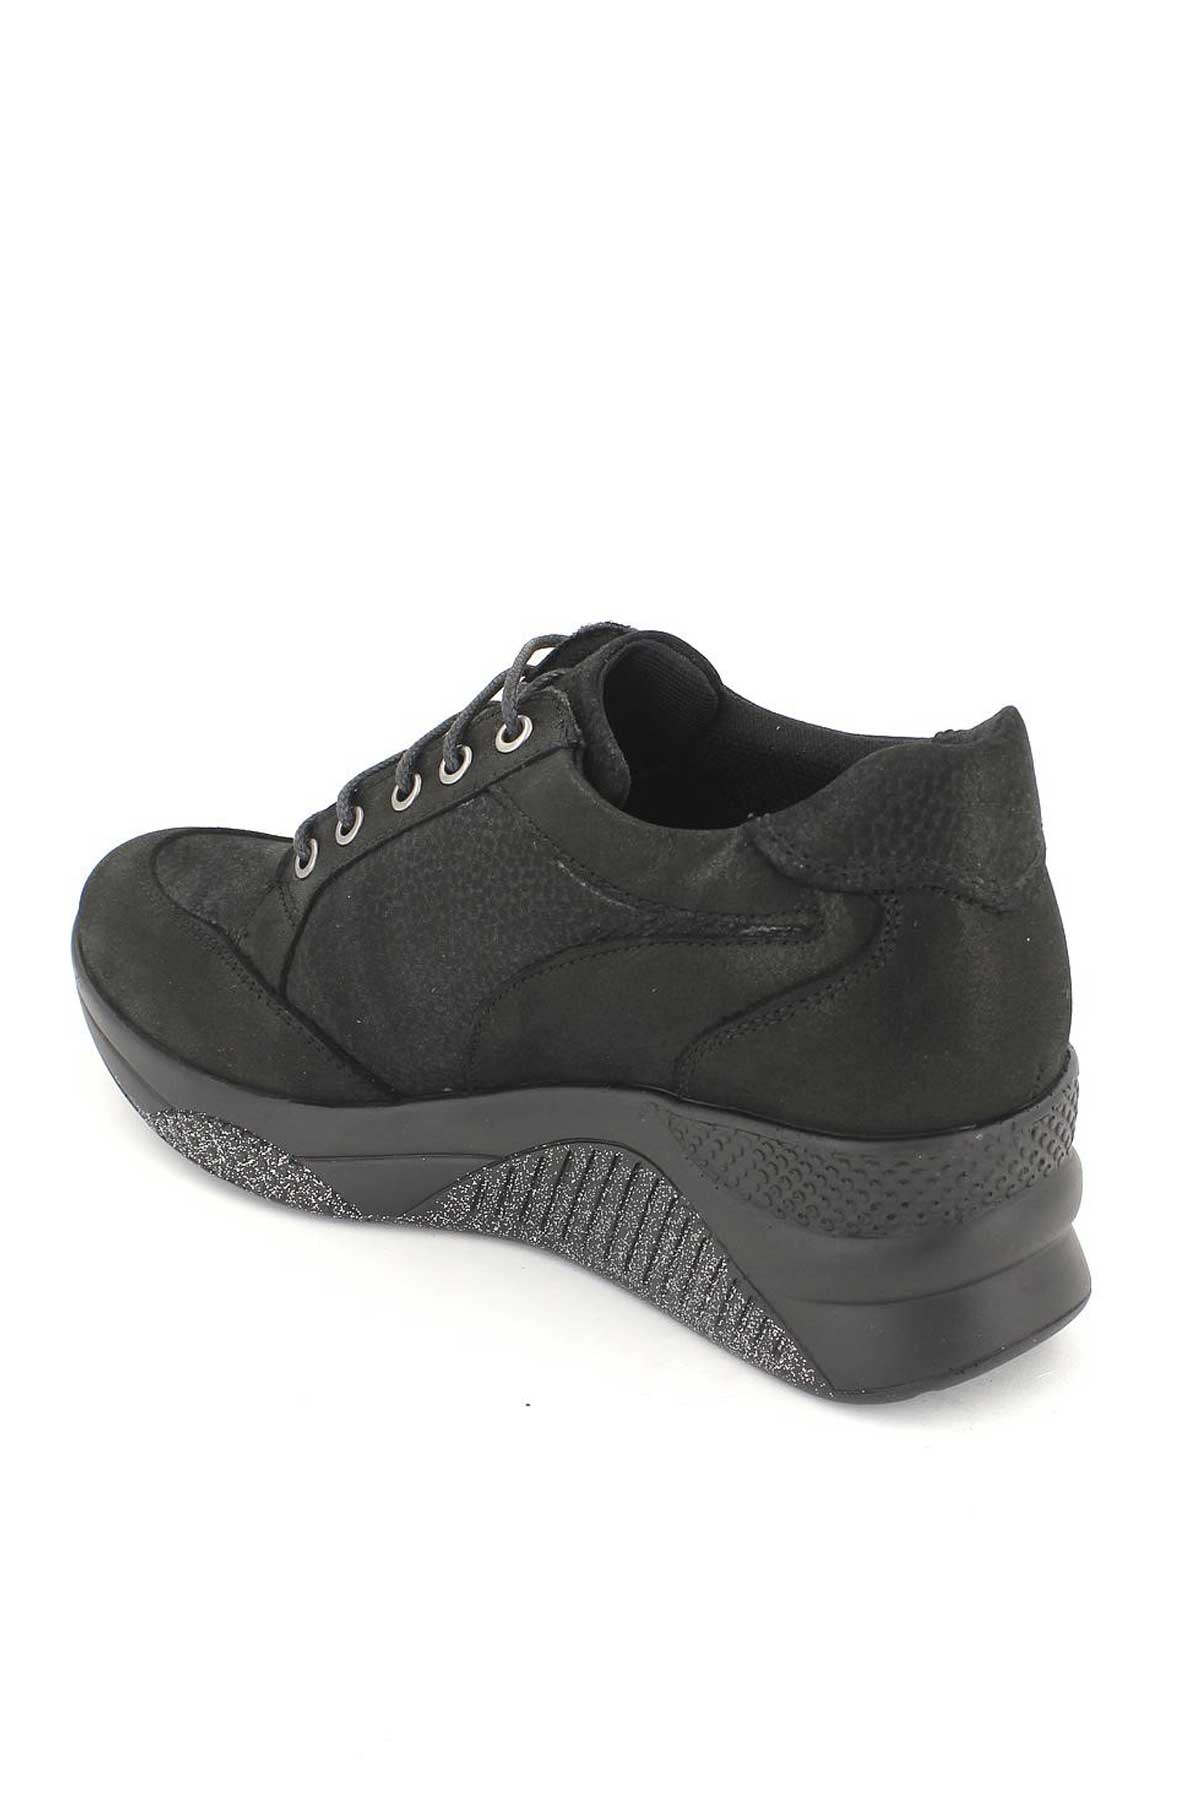 Kadın Deri Sneakers Siyah 1856005K